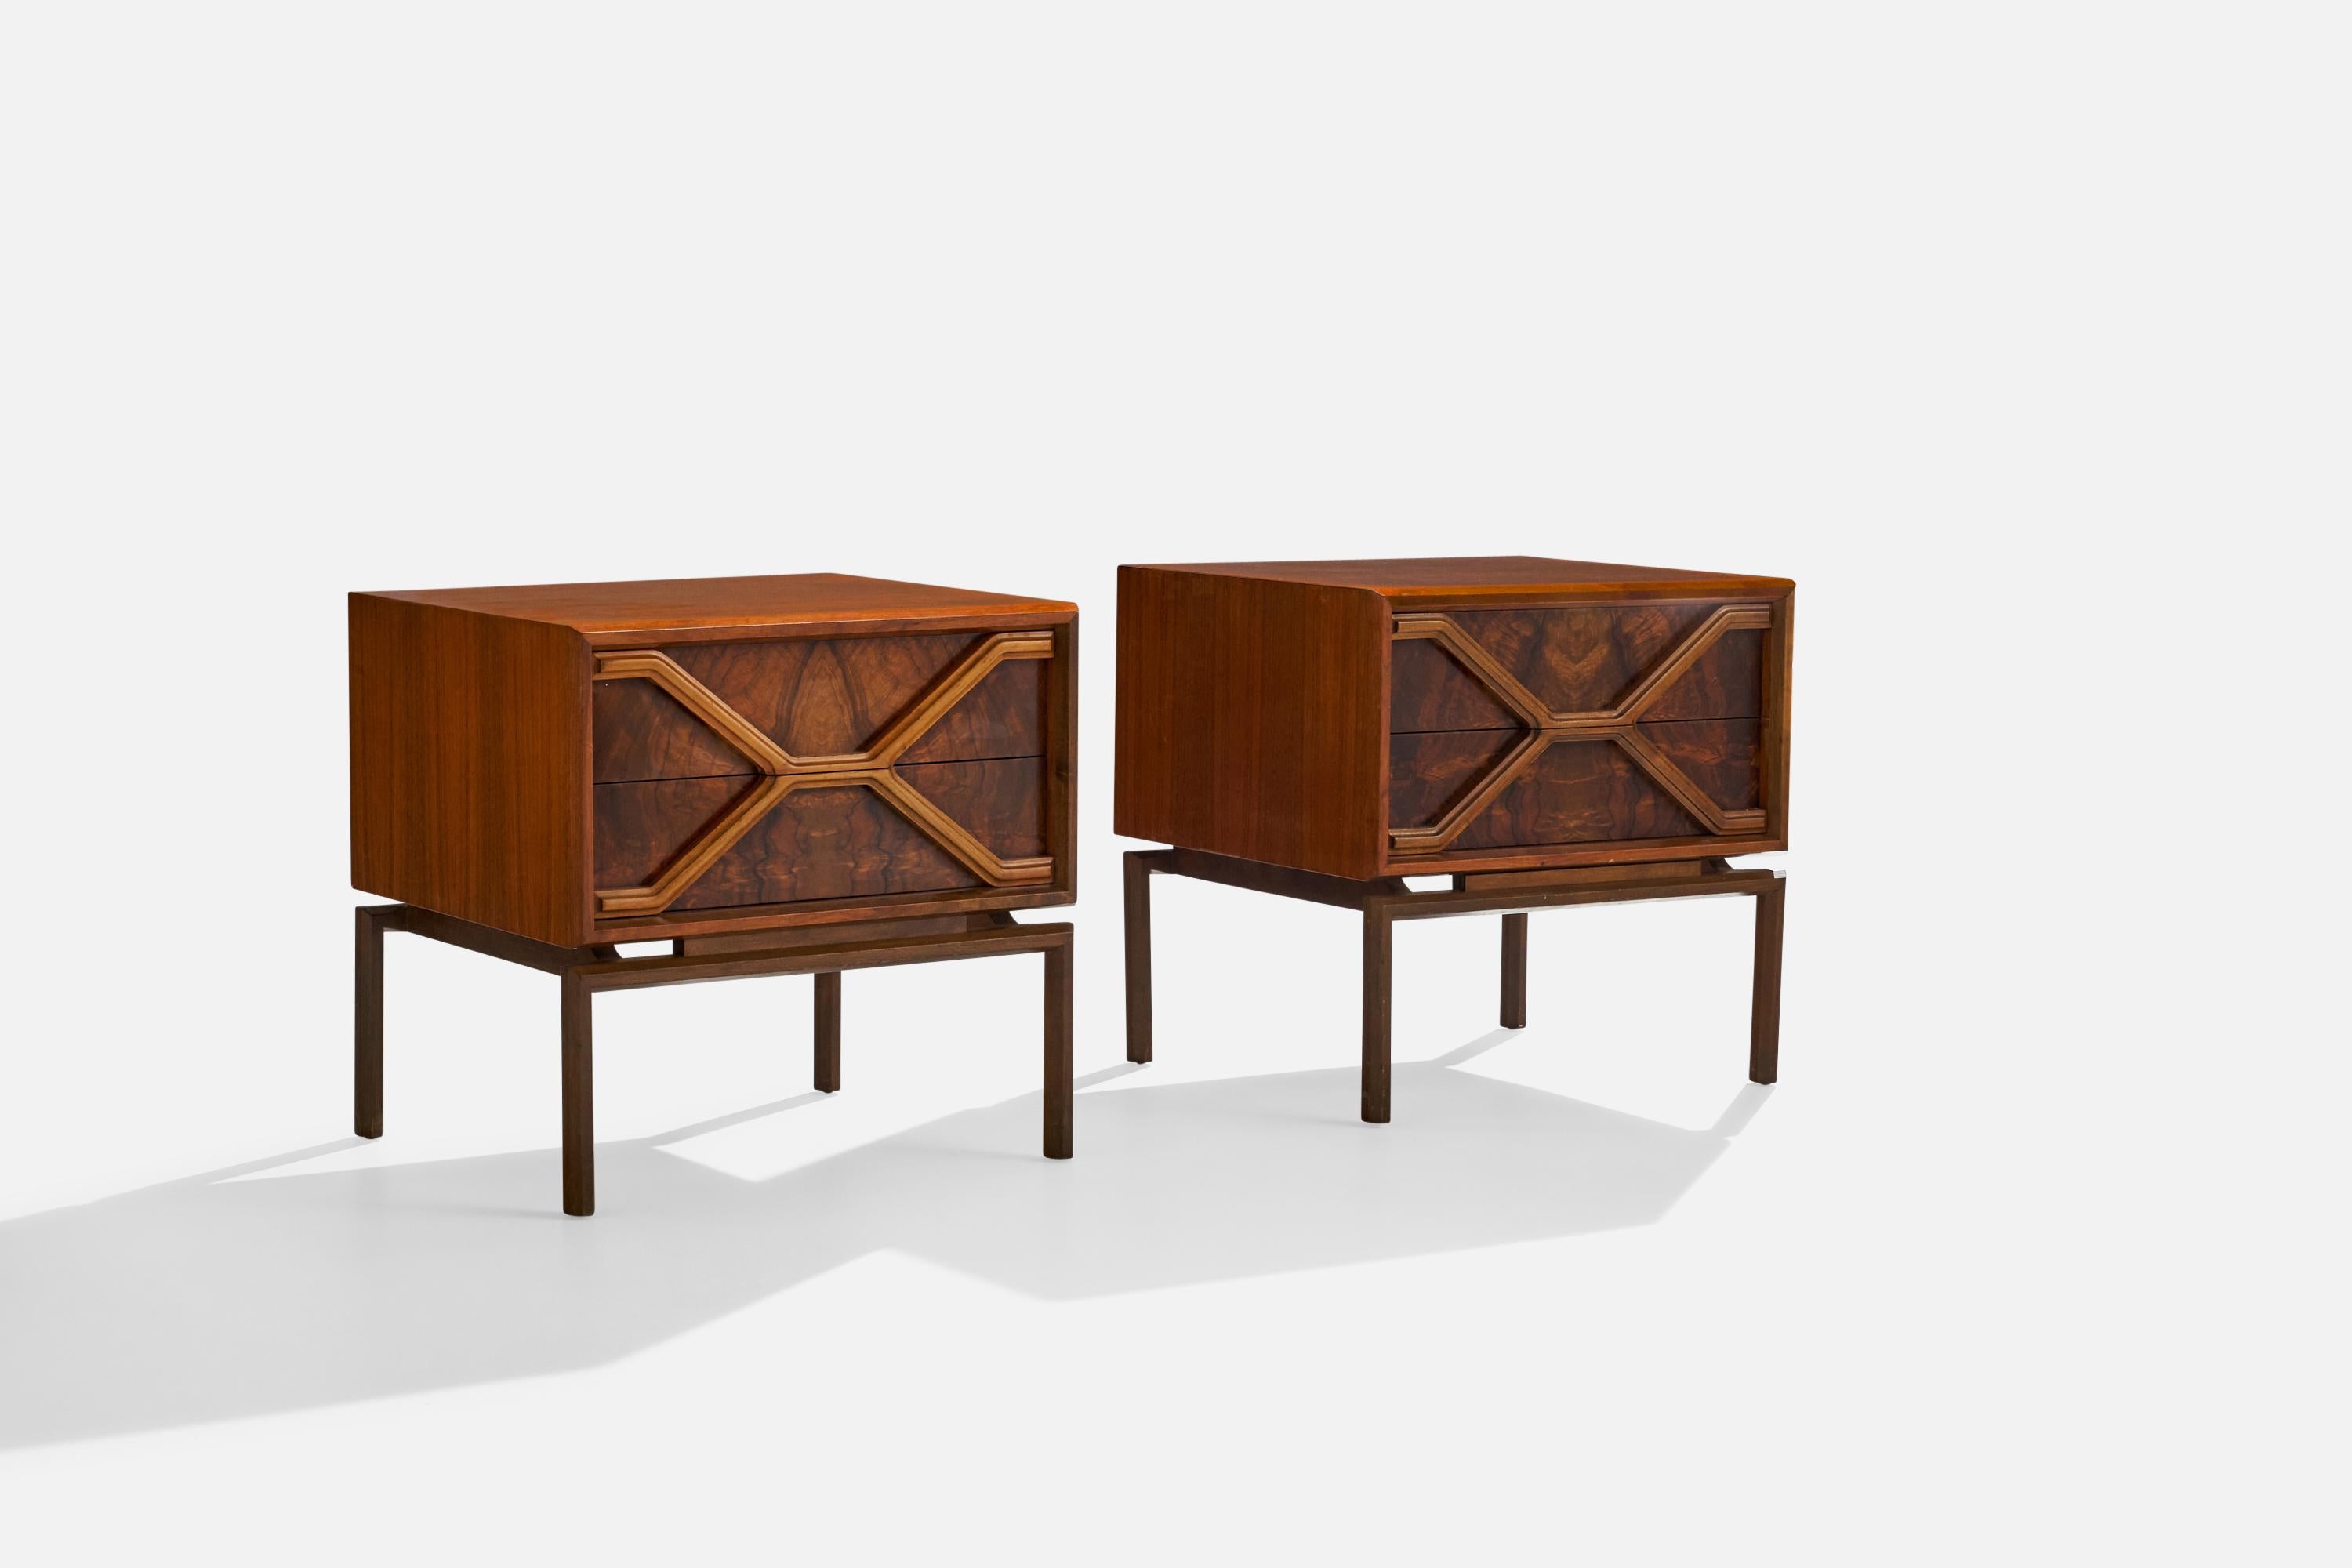 Ein Paar Nachttische oder Nachttischchen aus Palisanderholz, entworfen und hergestellt von dem amerikanischen Designer Edmond J. Spence und produziert in Schweden, ca. 1950er Jahre.